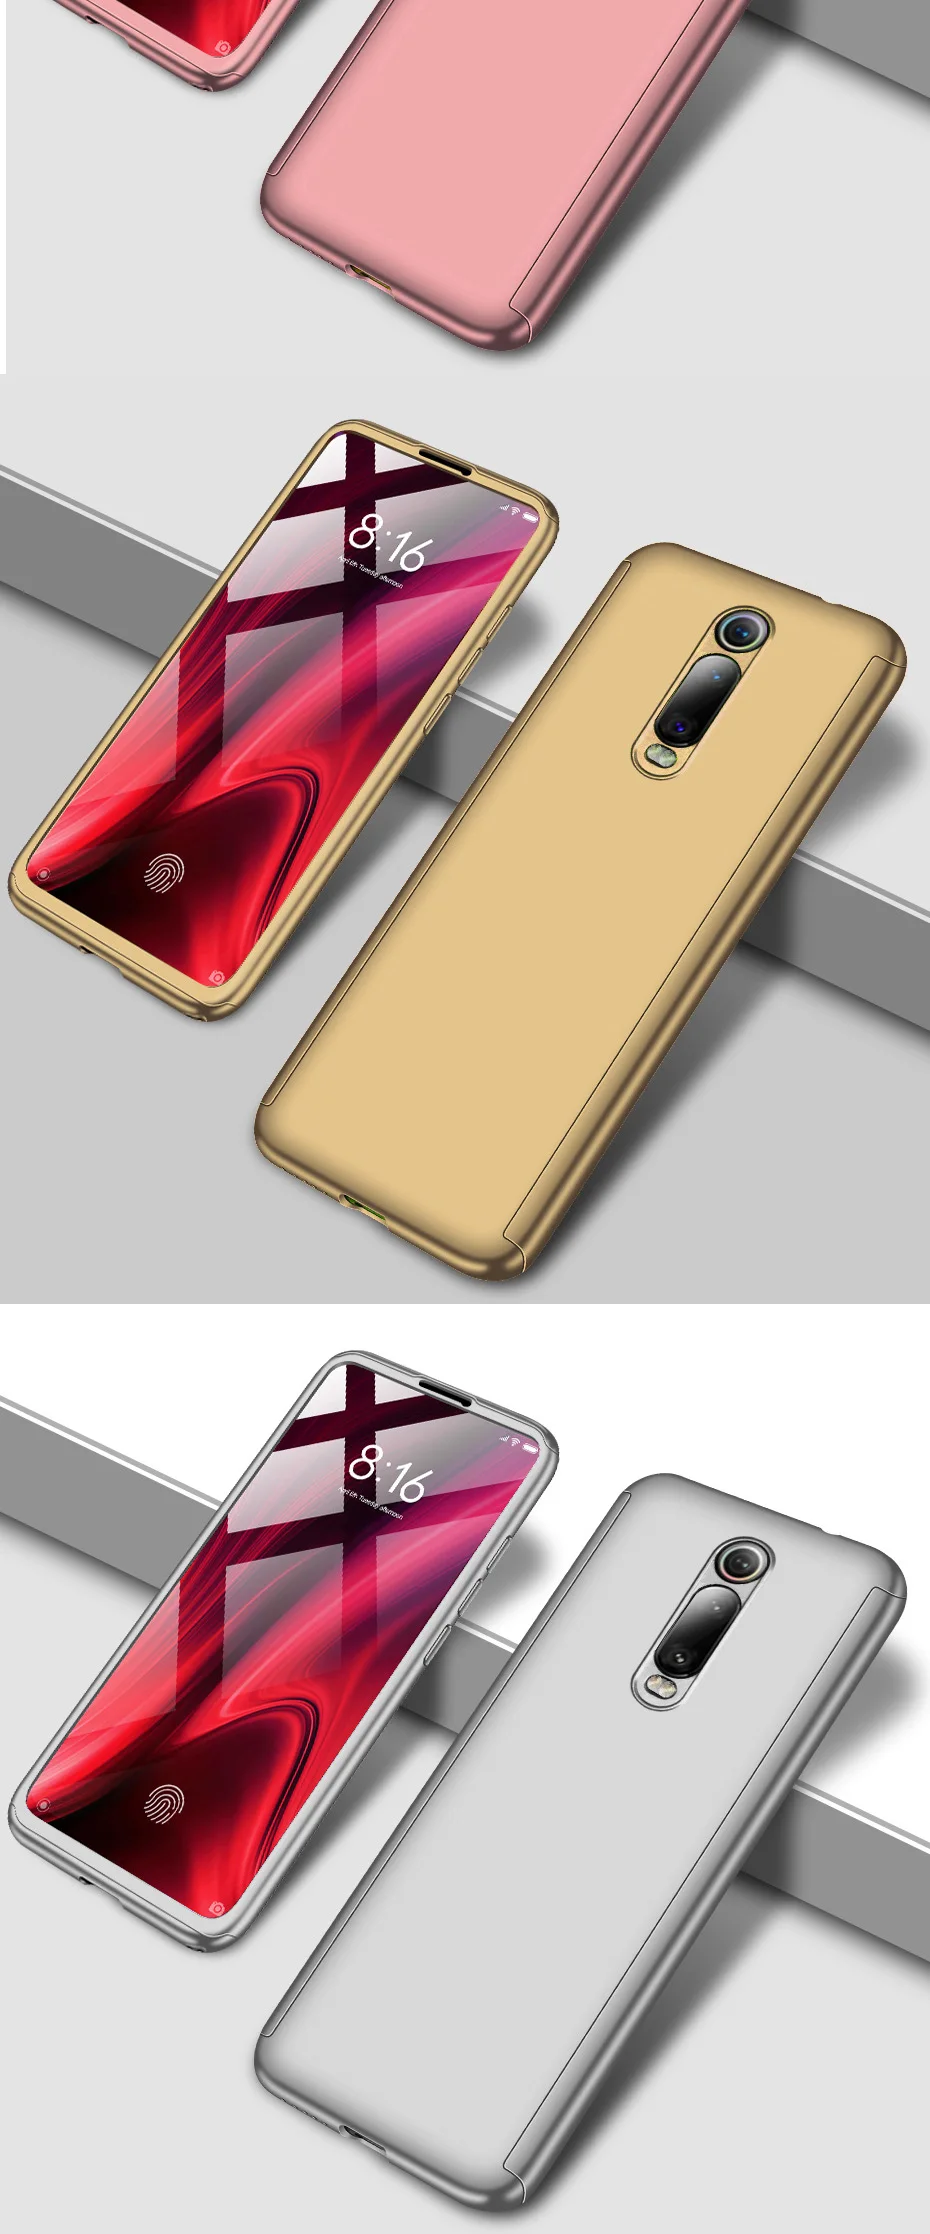 360 полный защитный чехол для телефона для Xiaomi Redmi Примечание 8 7 6 5 K20 Pro Чехол для телефона Redmi 5A 6A 7 5 плюс 7A чехол с Экран протектор